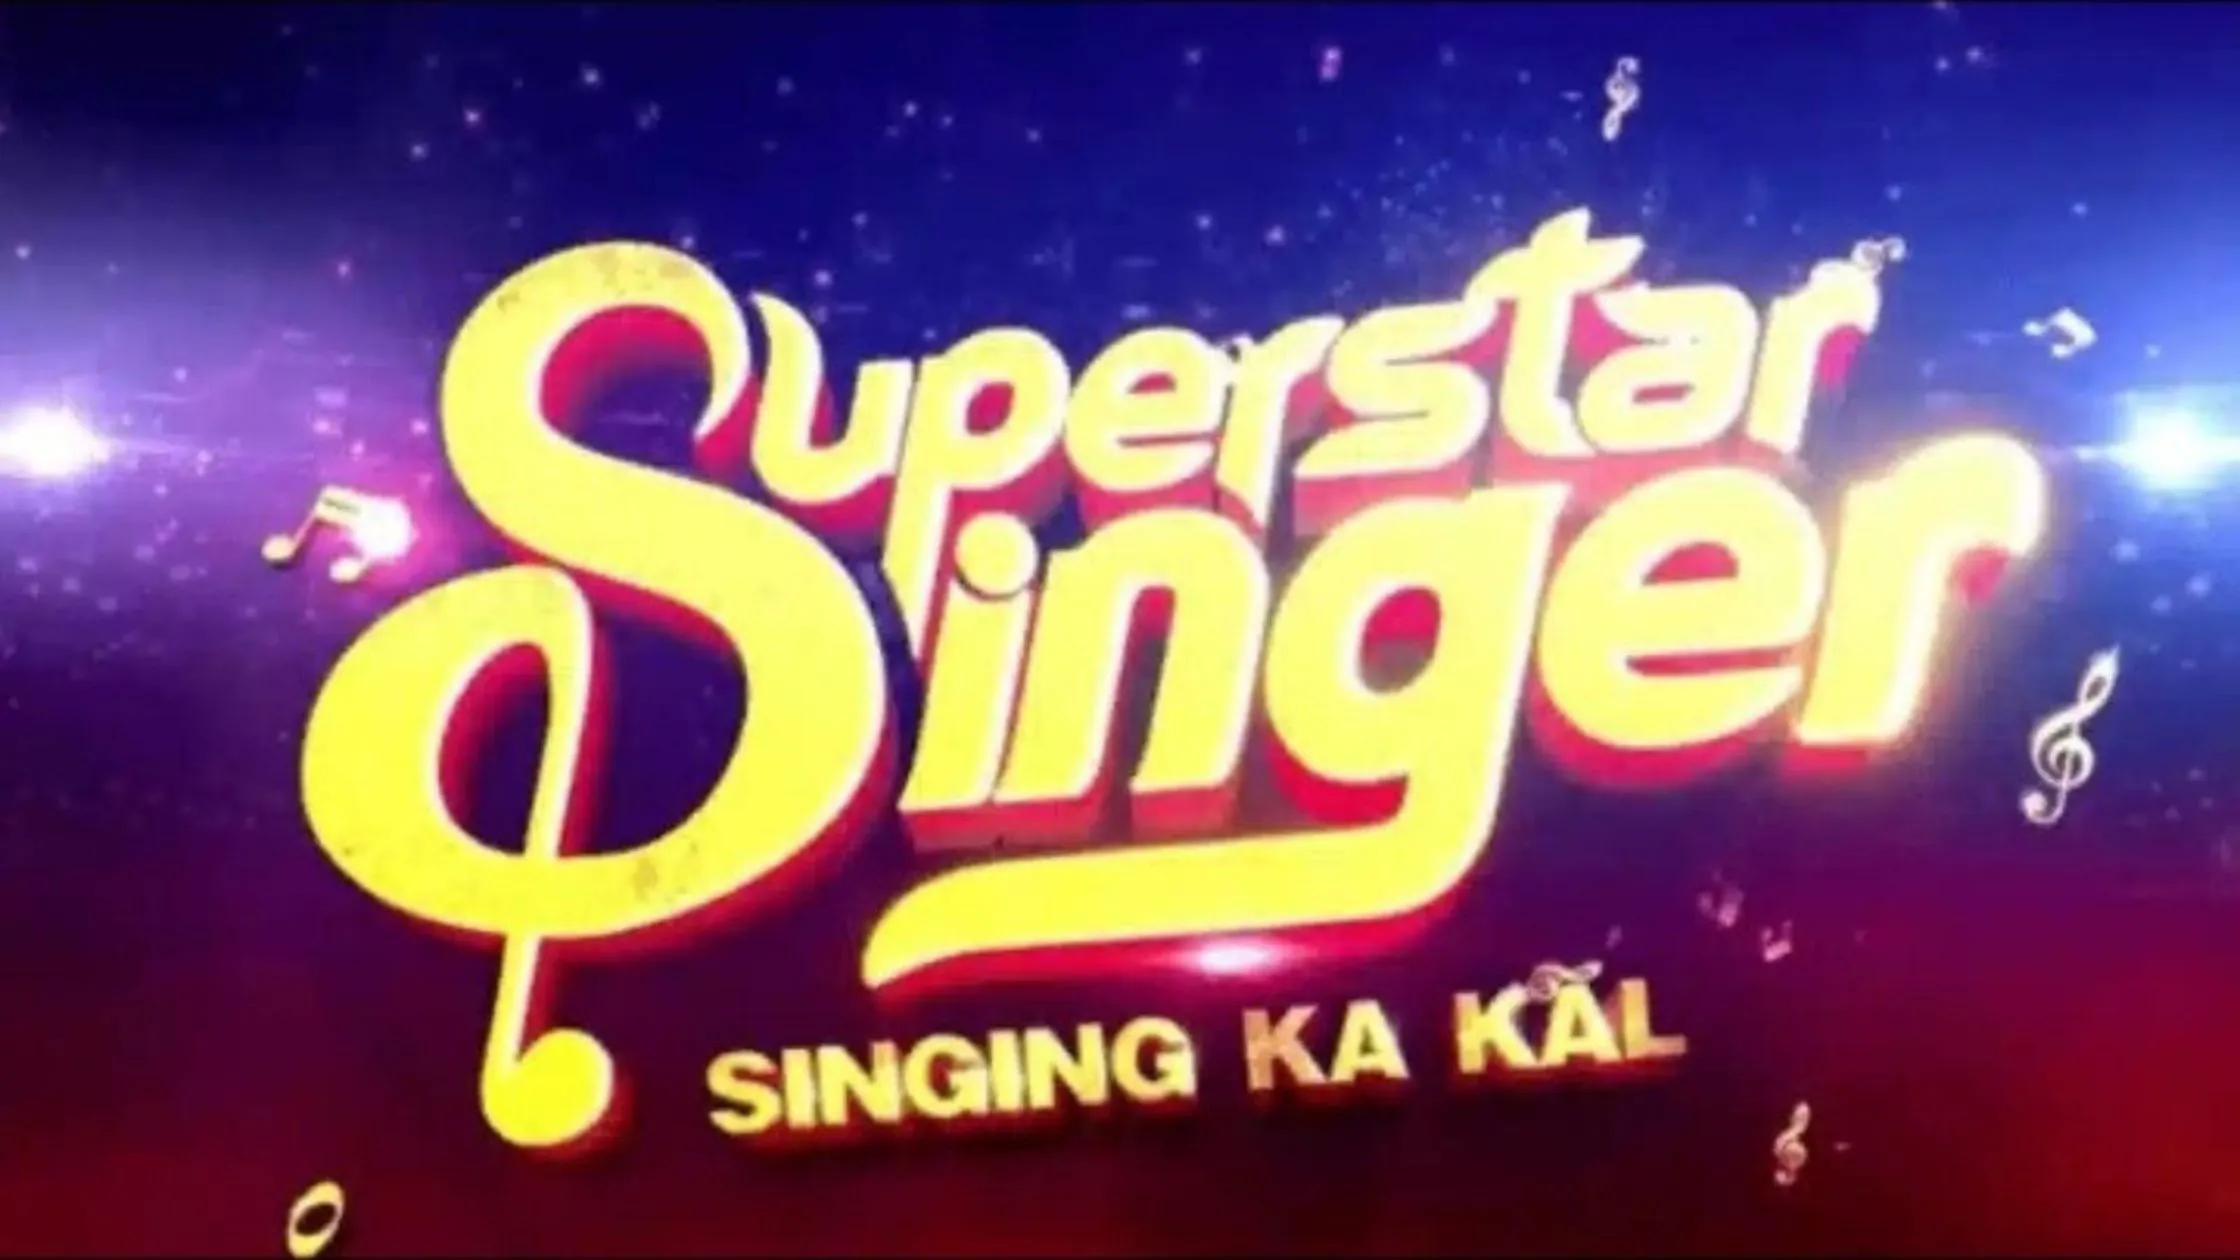 SuperStar Singer 3 Audition, Superstar Singer 3 Contestants, Superstar Singer 3 Start Date, Superstar Singer 3 jadges, Superstar Singer 3 Neha Kakkar,